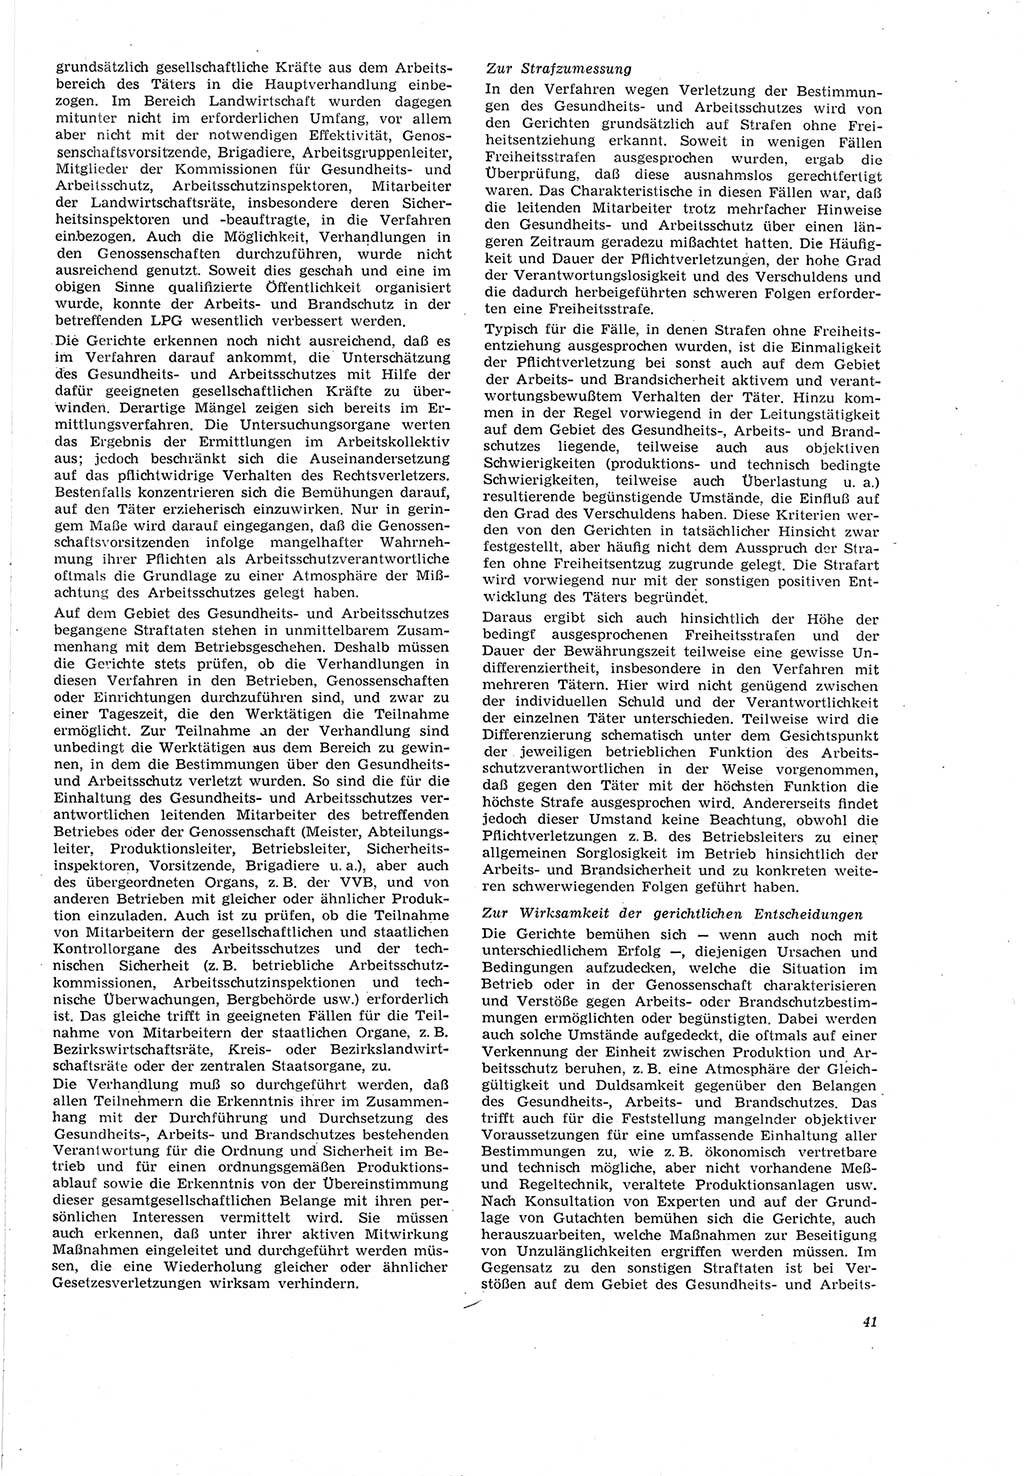 Neue Justiz (NJ), Zeitschrift für Recht und Rechtswissenschaft [Deutsche Demokratische Republik (DDR)], 20. Jahrgang 1966, Seite 41 (NJ DDR 1966, S. 41)